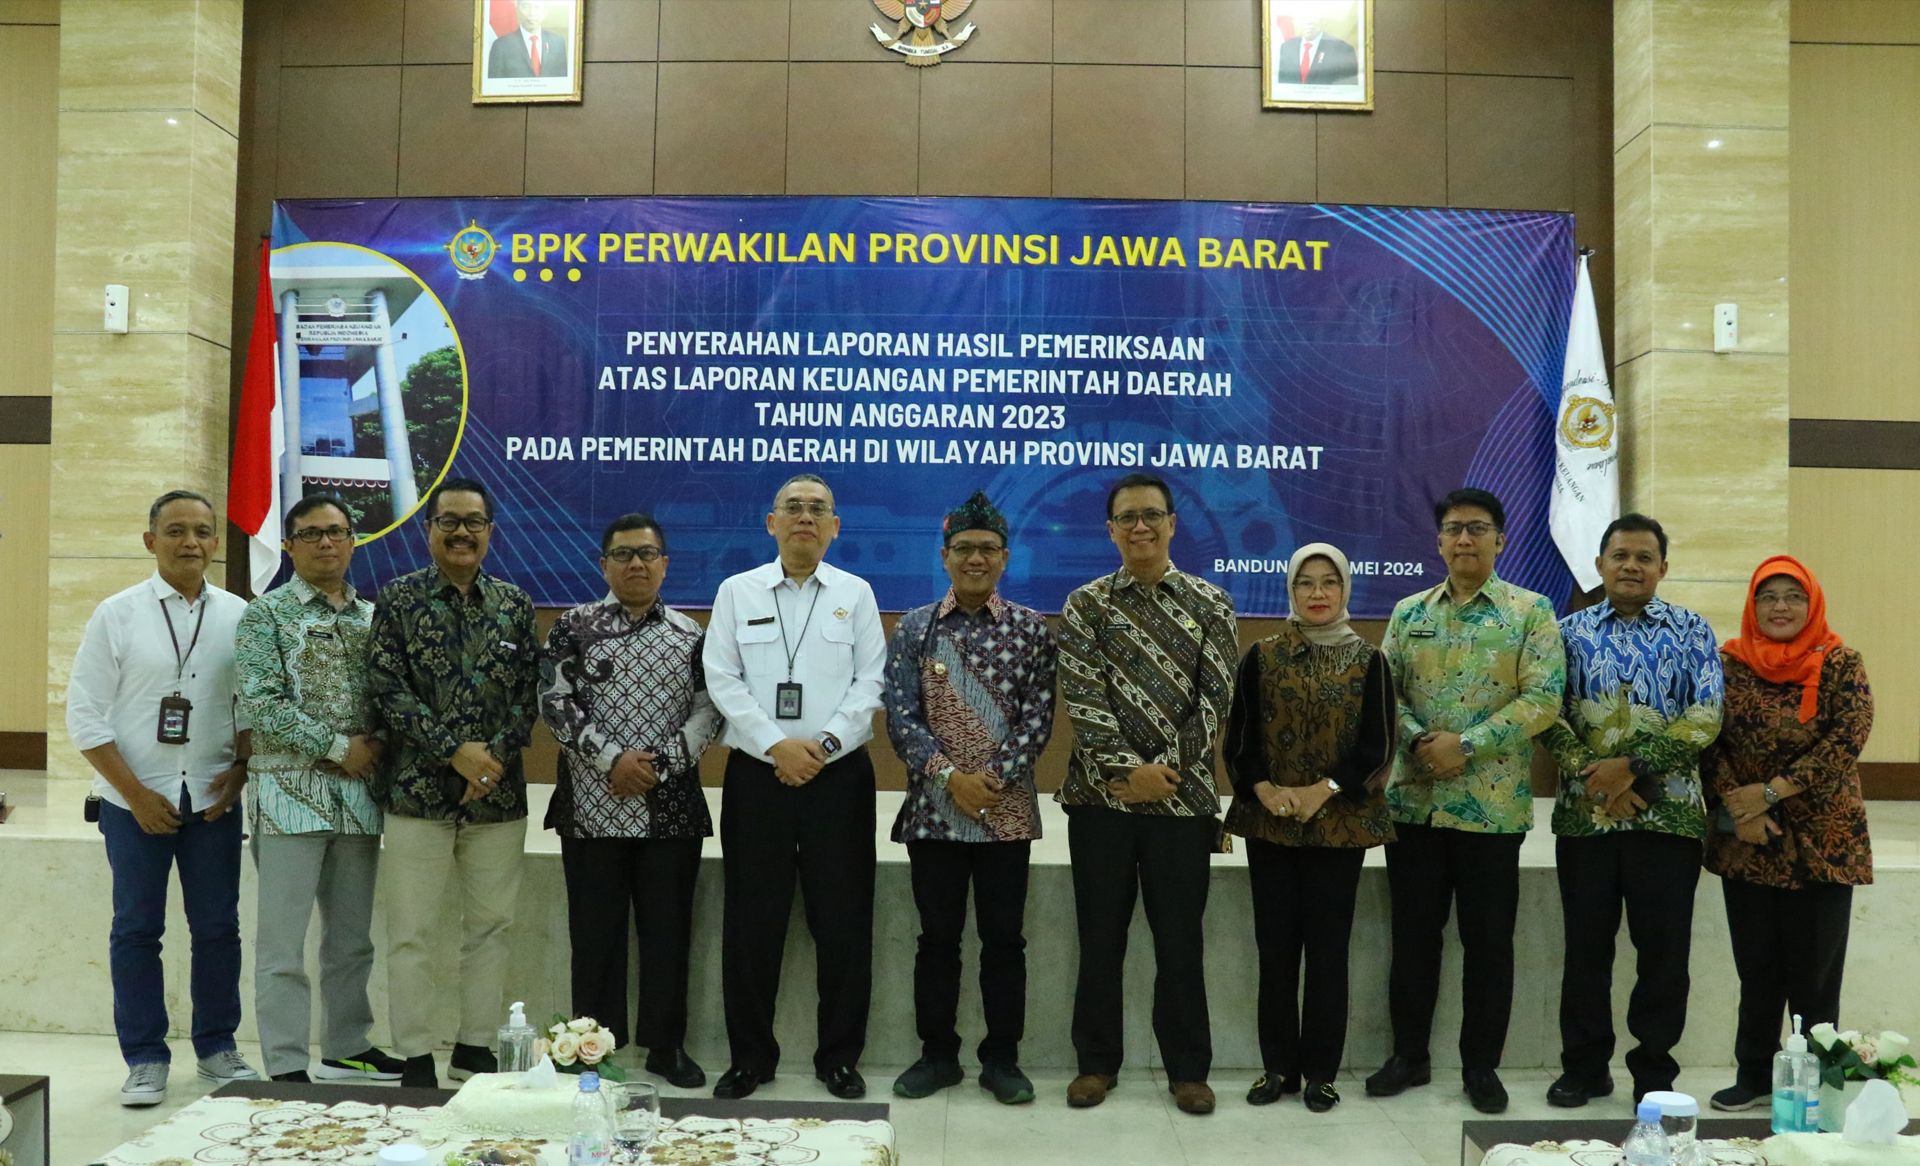 Pemerintah Kabupaten Bandung kembali meraih Opini Wajar Tanpa Pengecualian WTP sebanyak 8 kali berturut-turut dari Badan Pemeriksa Keuangan BPK